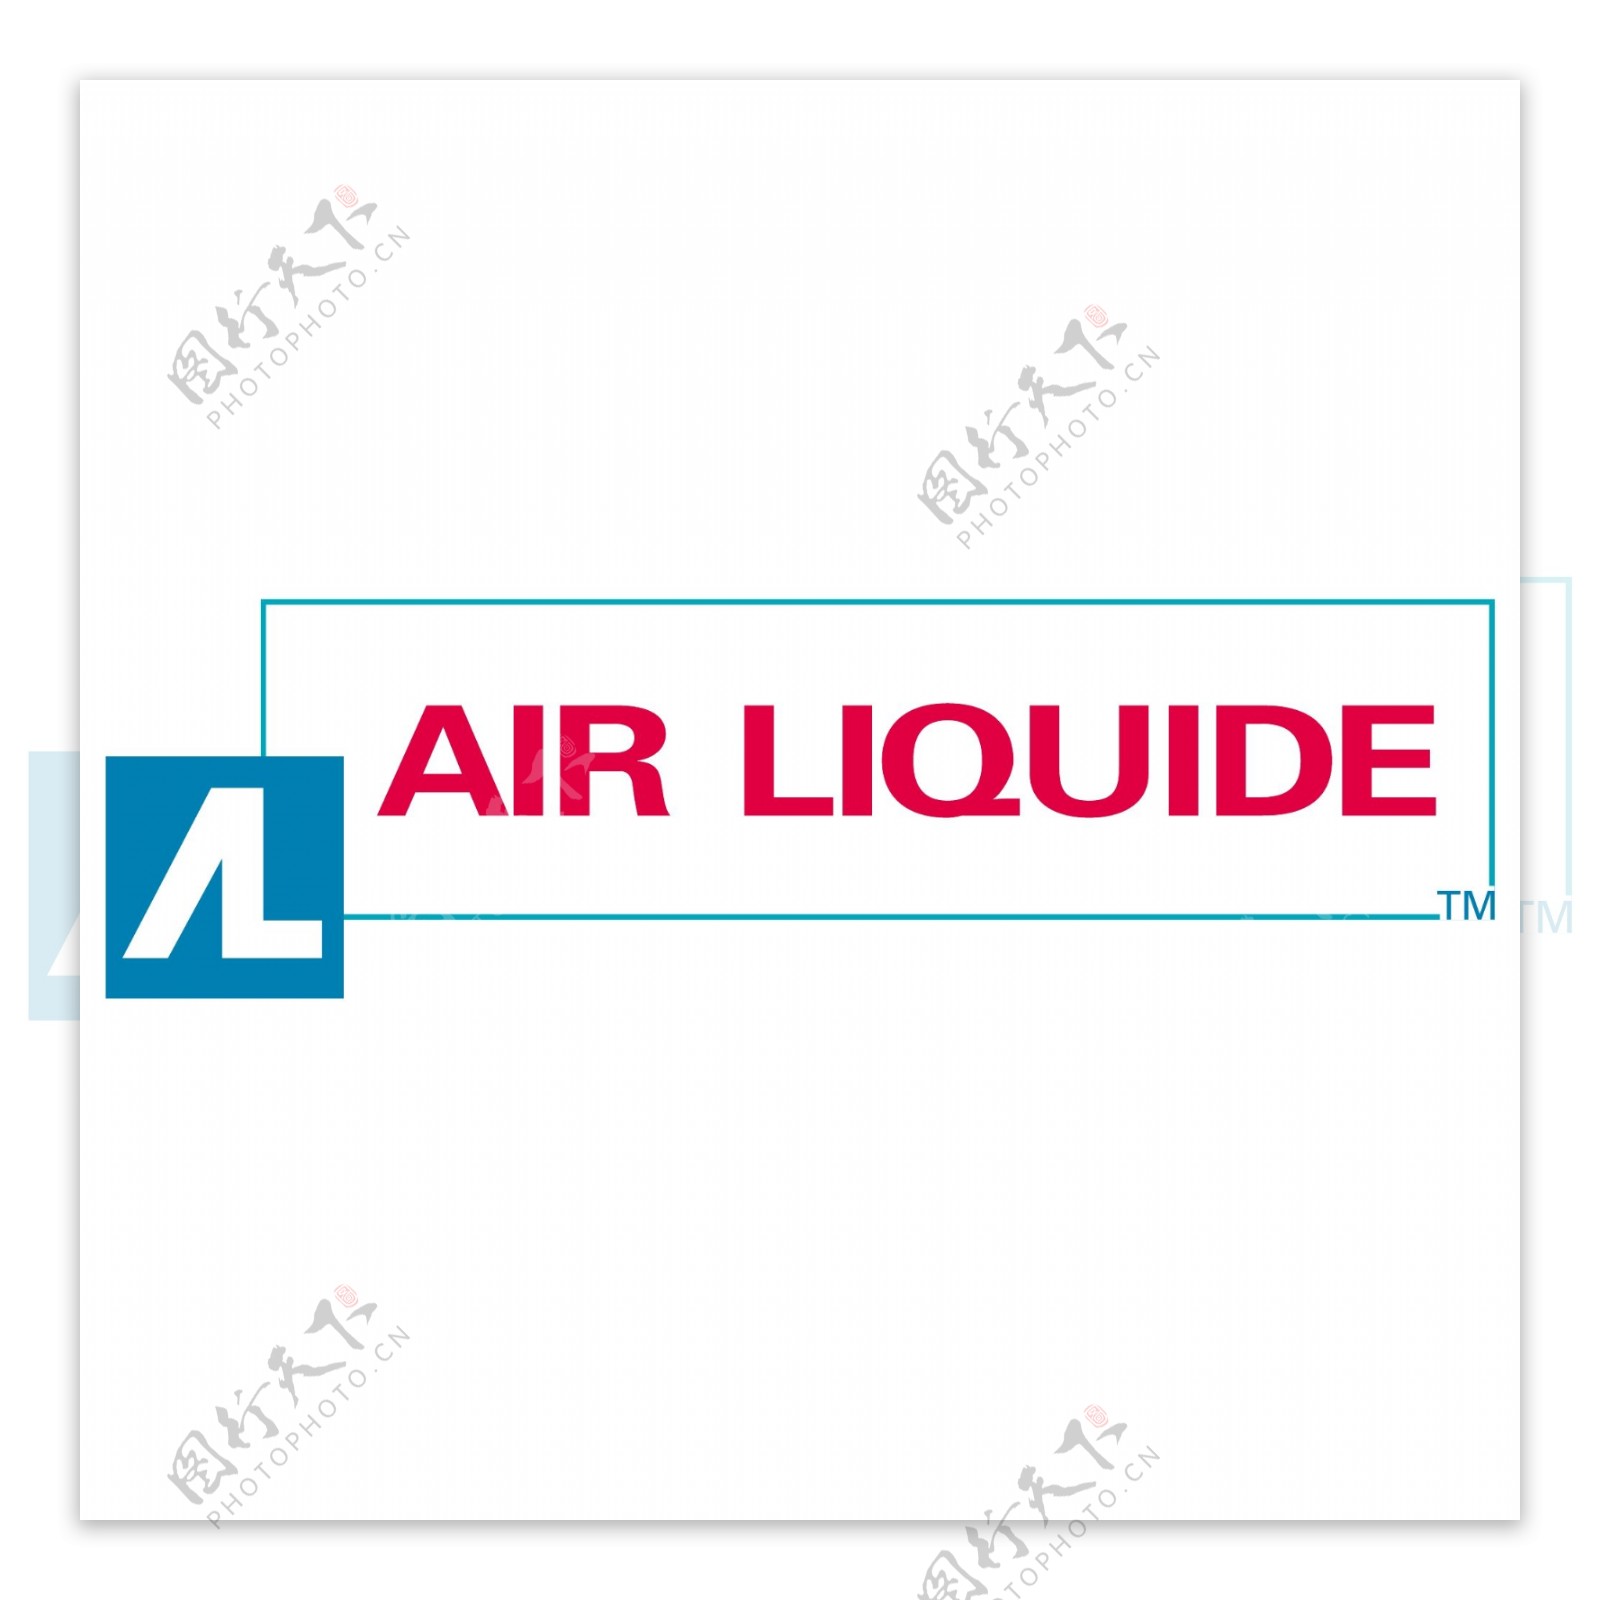 液化空气集团